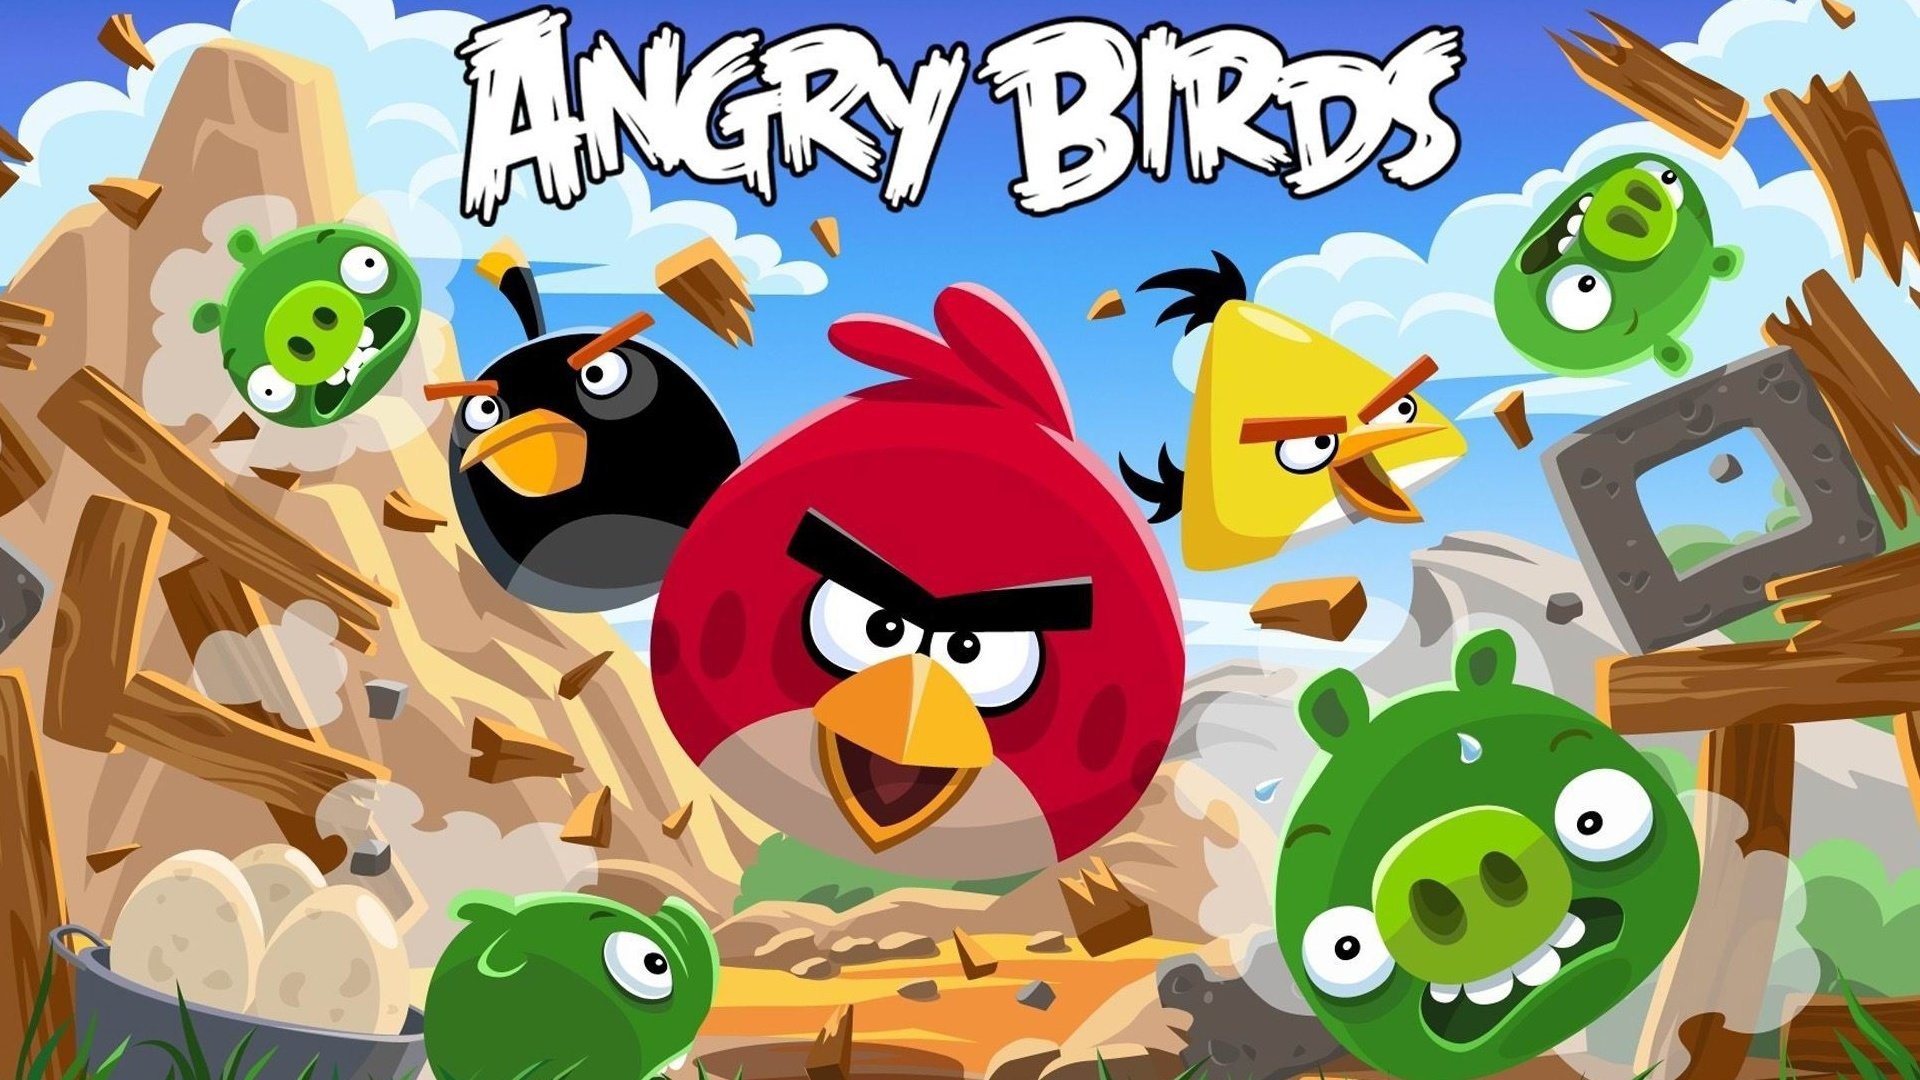 gambar angry bird movie wallpaper